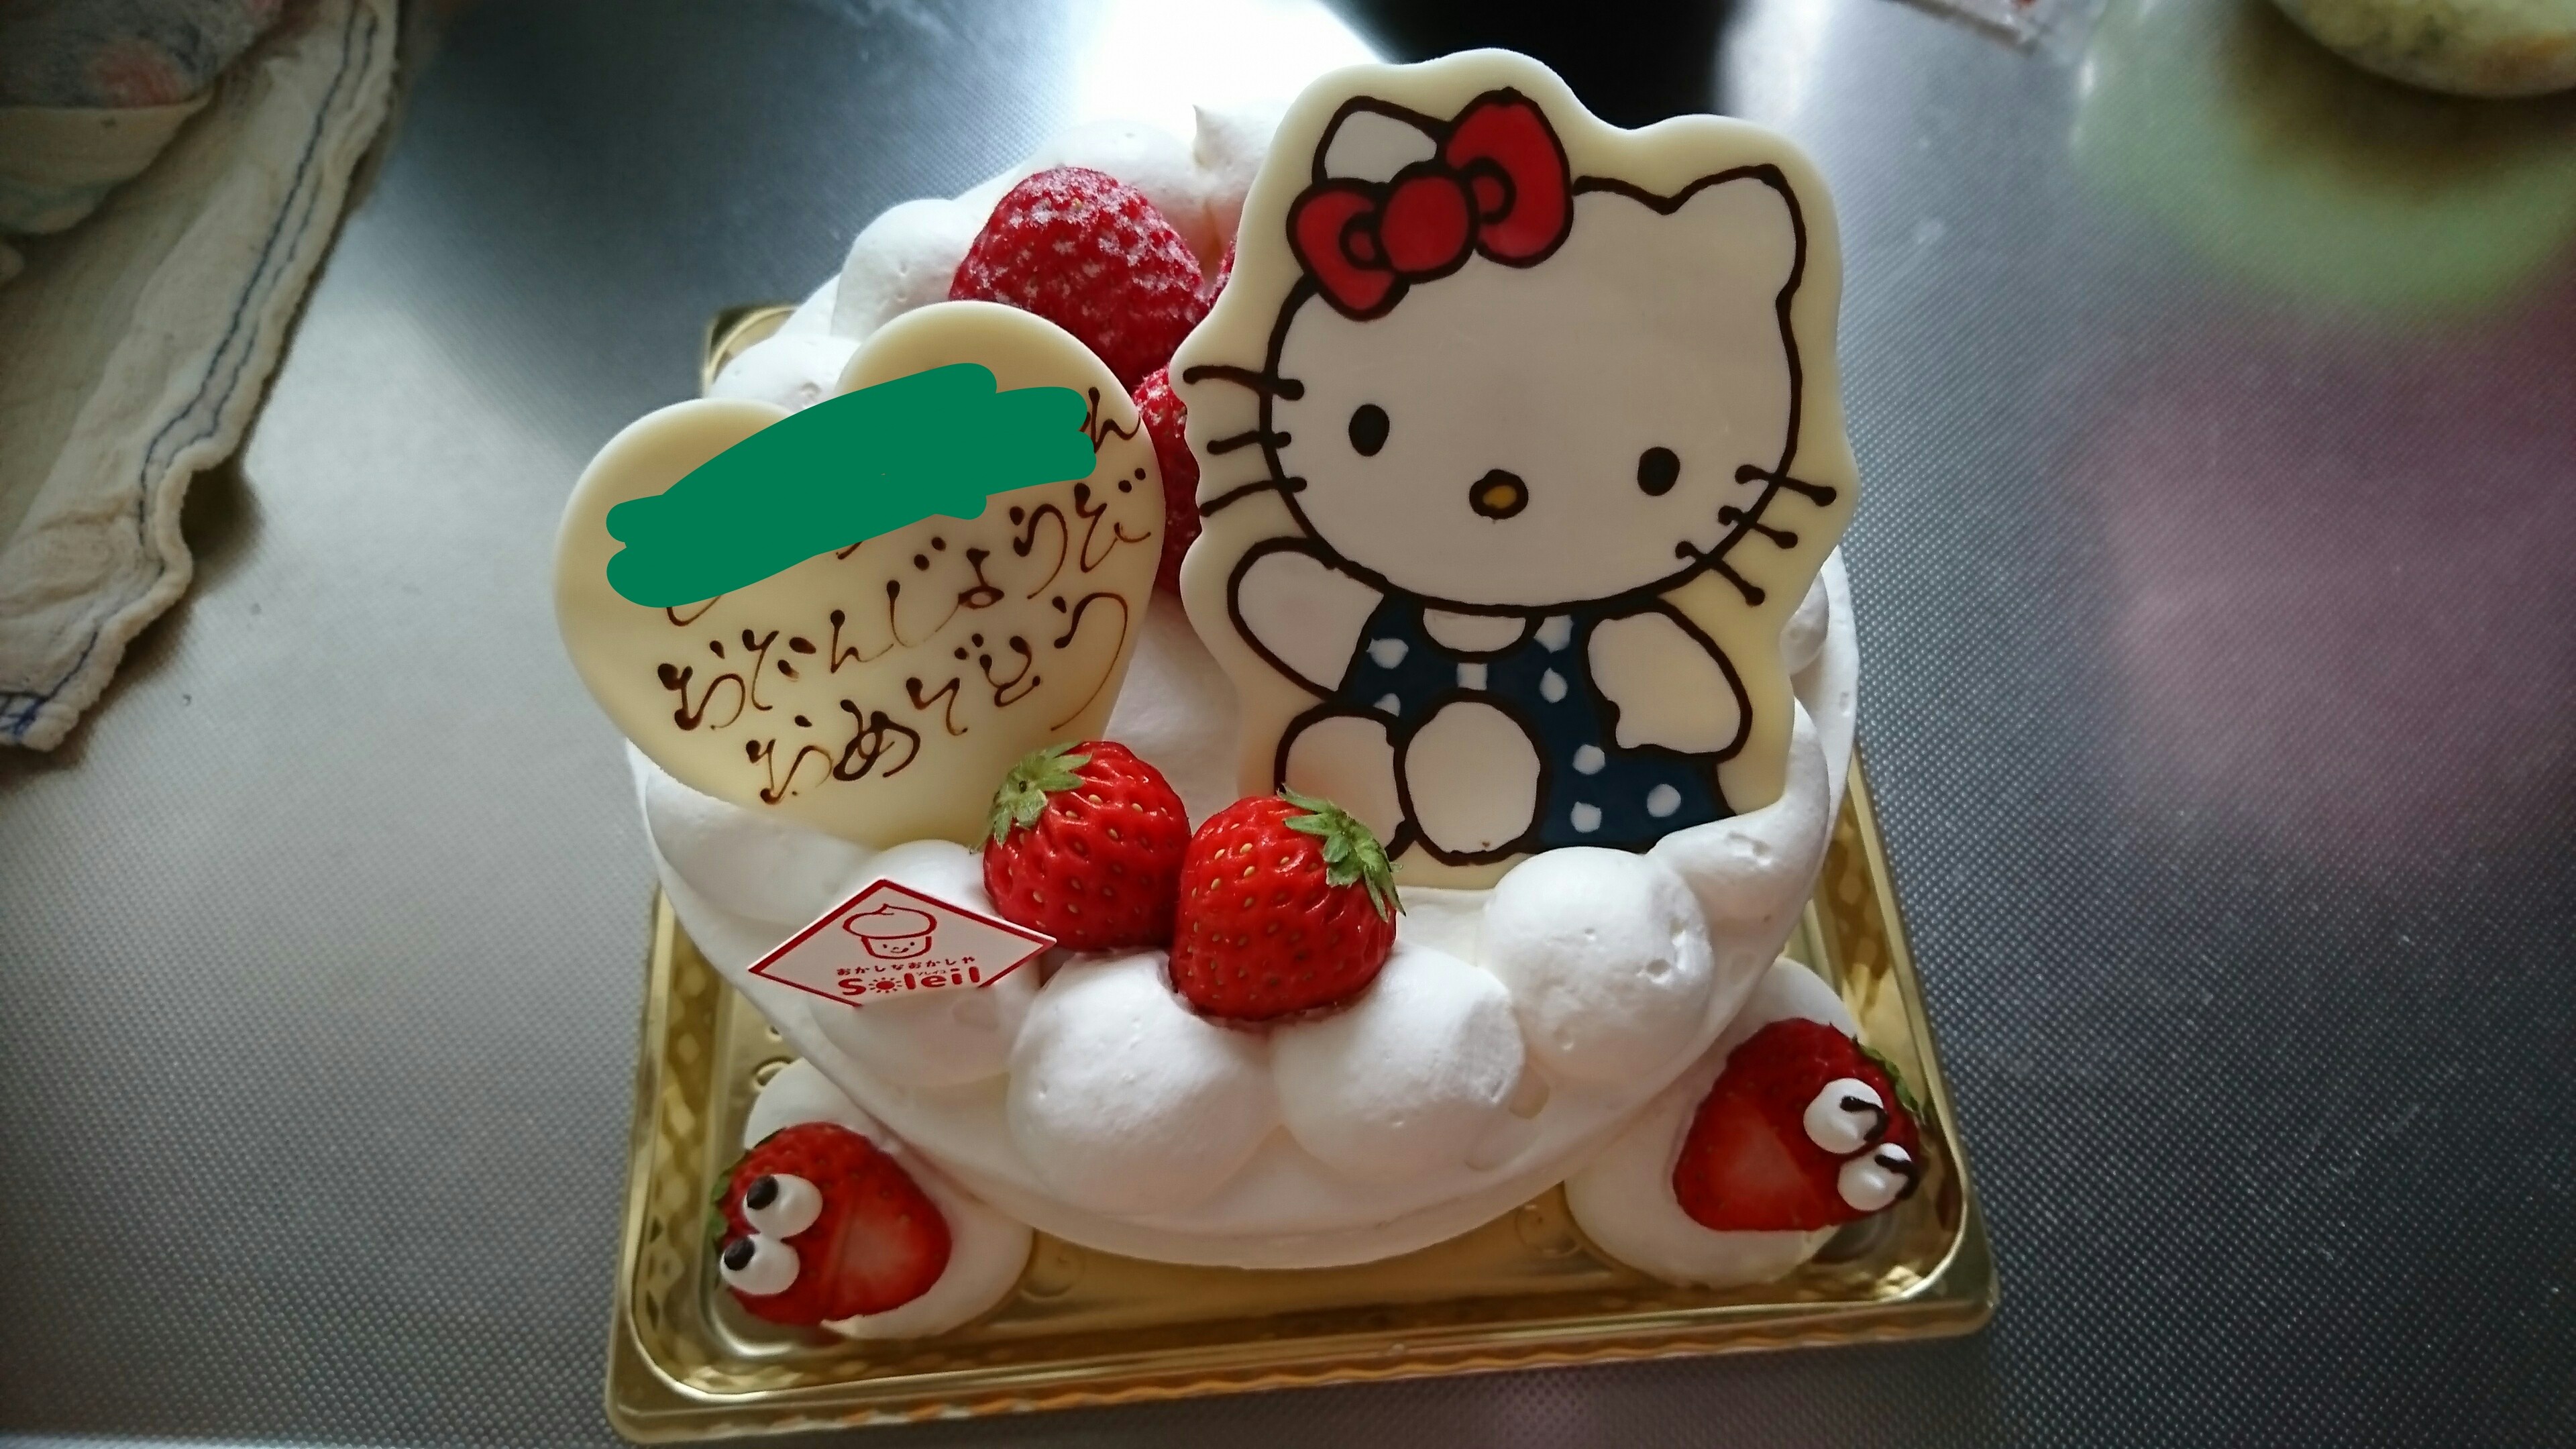 ソレイユでイラストケーキ ドライブgo Go 八戸モータース公式ブログ